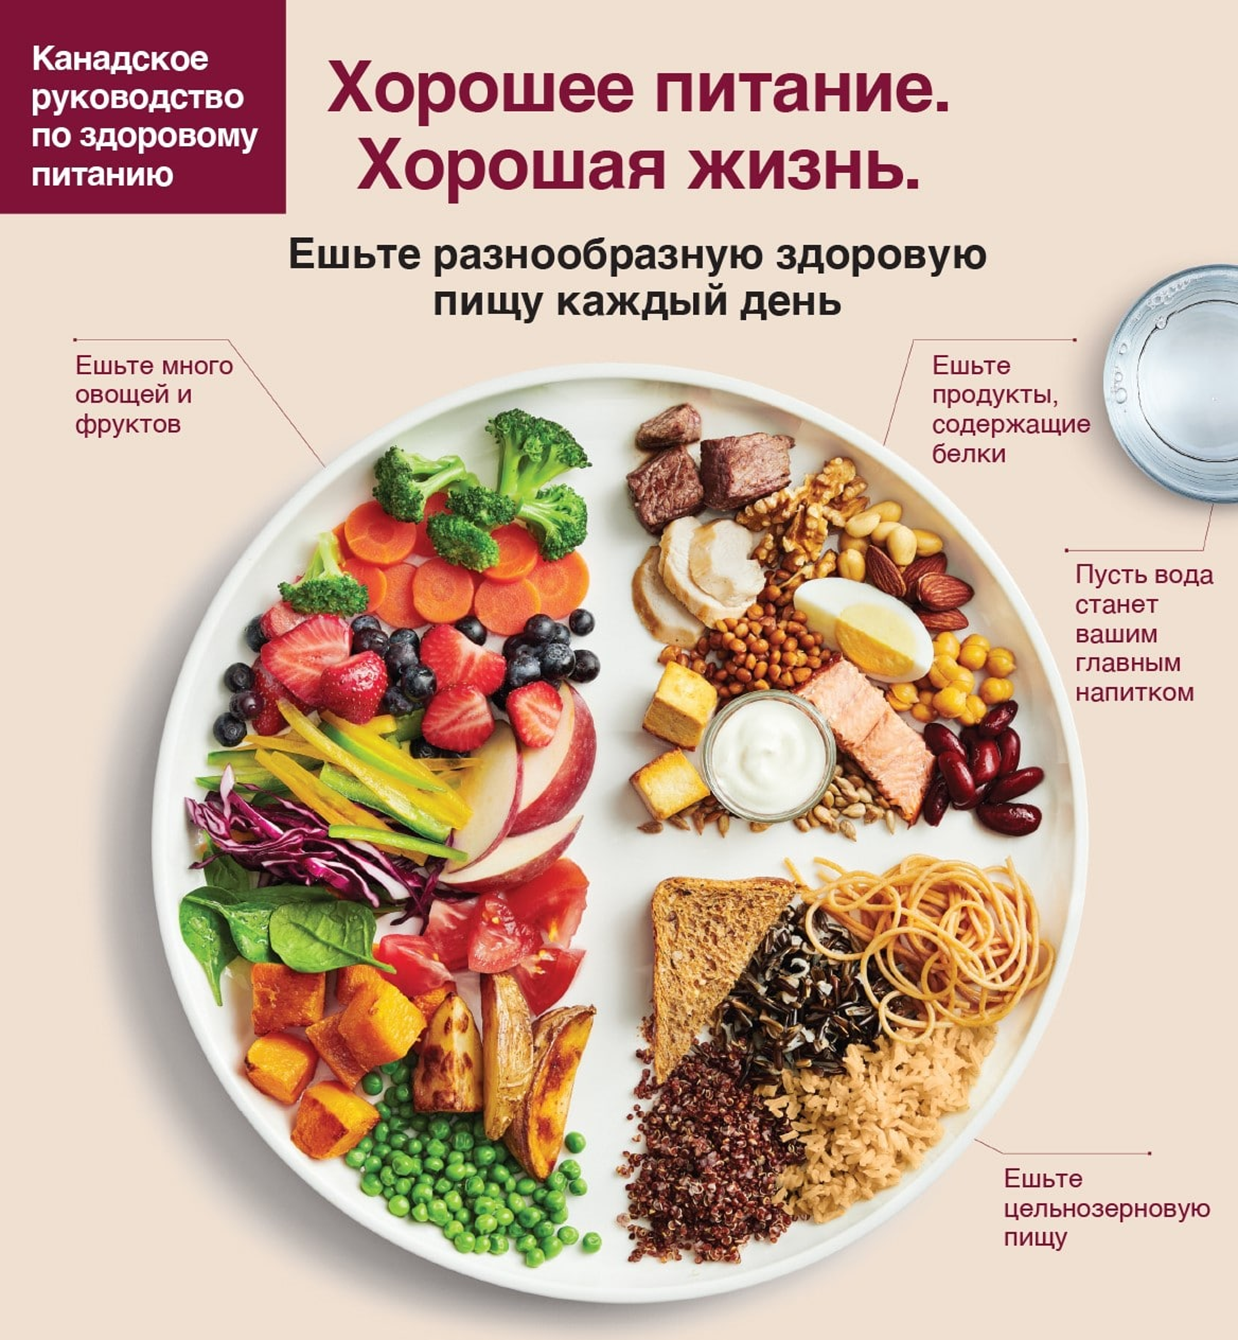 Что приготовить вкусно и недорого: рецепты бюджетных блюд - Бізнес новини Харкова